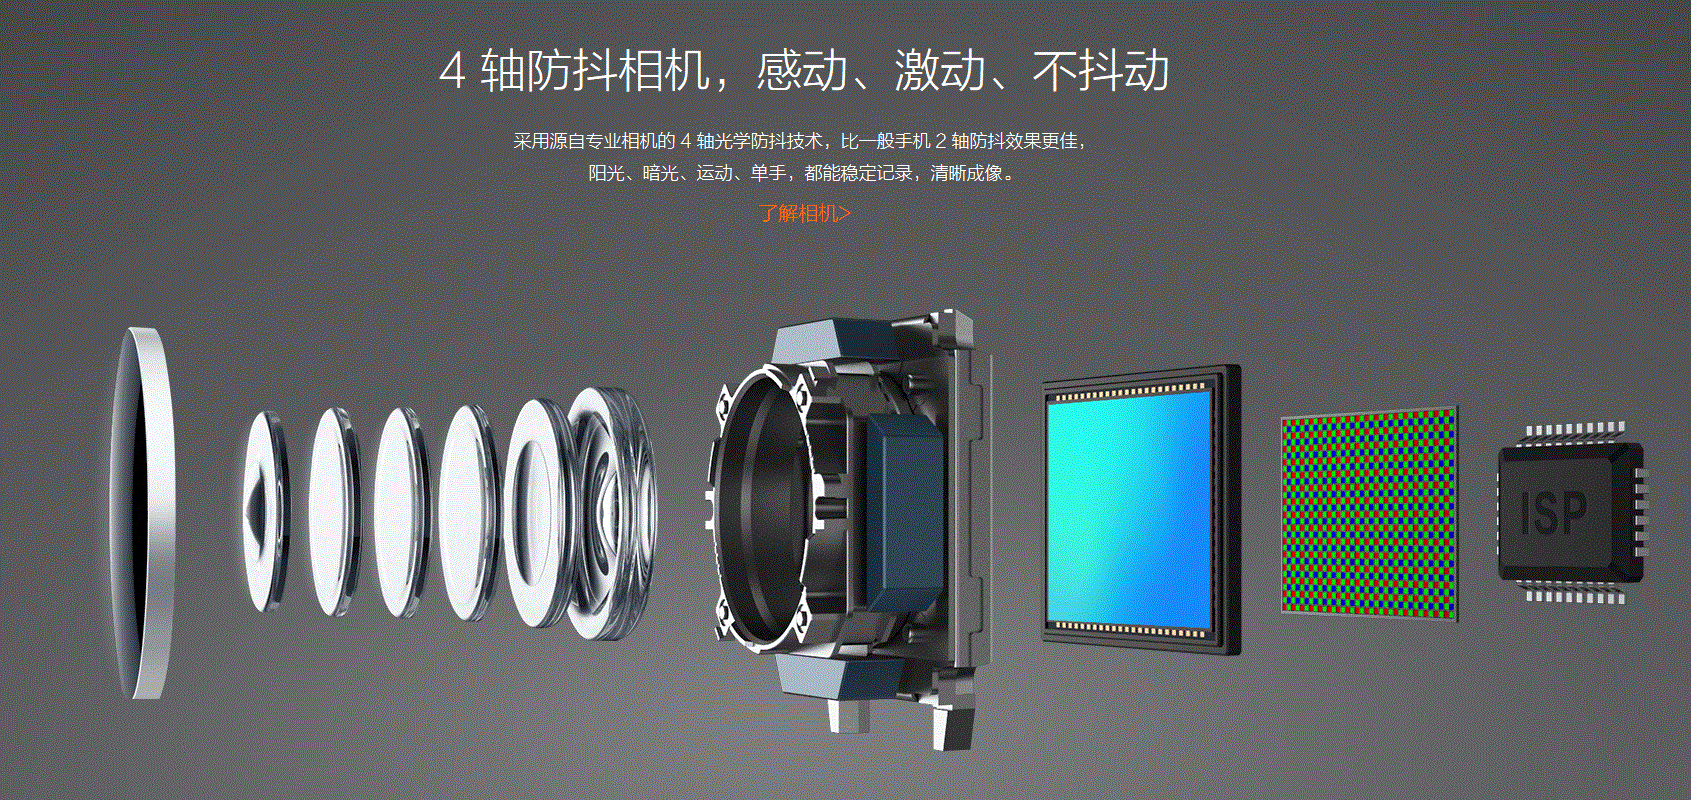 Xiaomi Mi5, Test, Testbericht, Antutu Benchmark, OIS Kamera, 4 Achsen Bildstabilisator, Neuheit, Kamera Test, DTI Pixel to Pixel